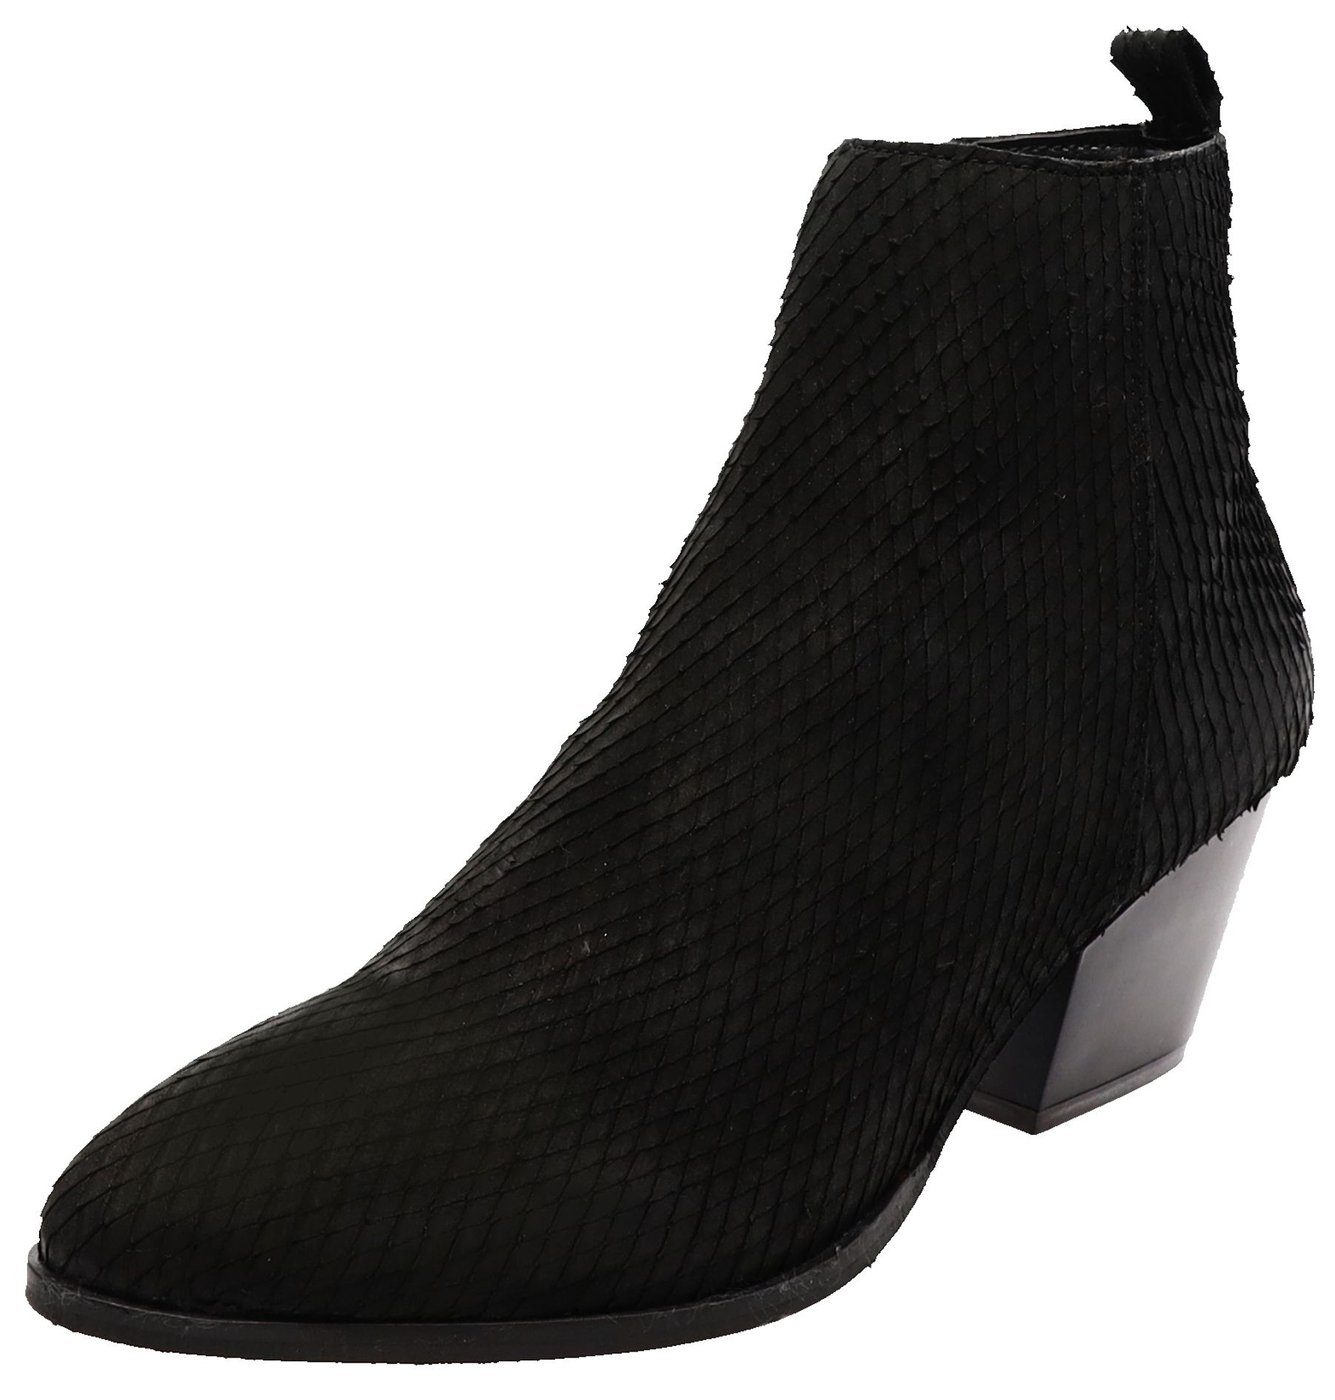 Buffalo Milana Black Damen Stiefelette Ankle Boots Schwarz Stiefelette Online Kaufen Otto